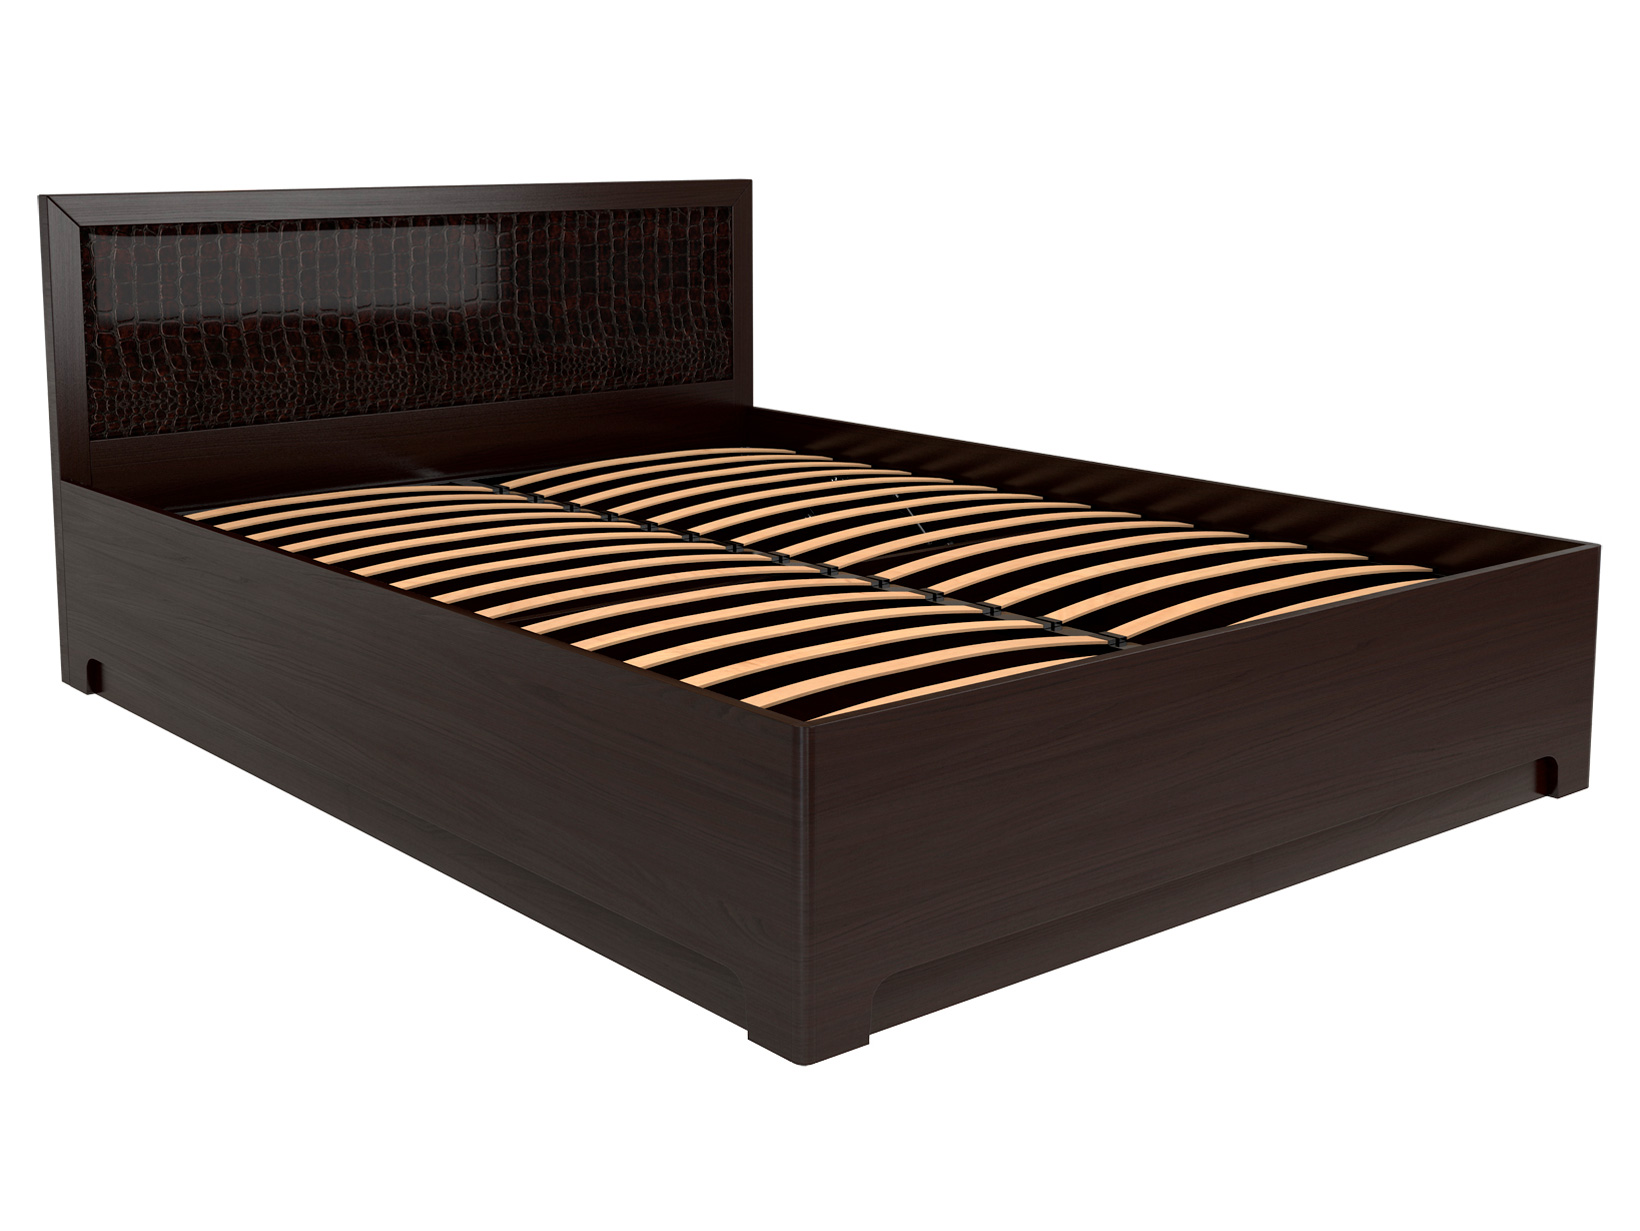 Двуспальная кровать с подъемным механизмом КУРАЖ Кровать Парма 1 / Кровать с подъемным механизмом Парма 1